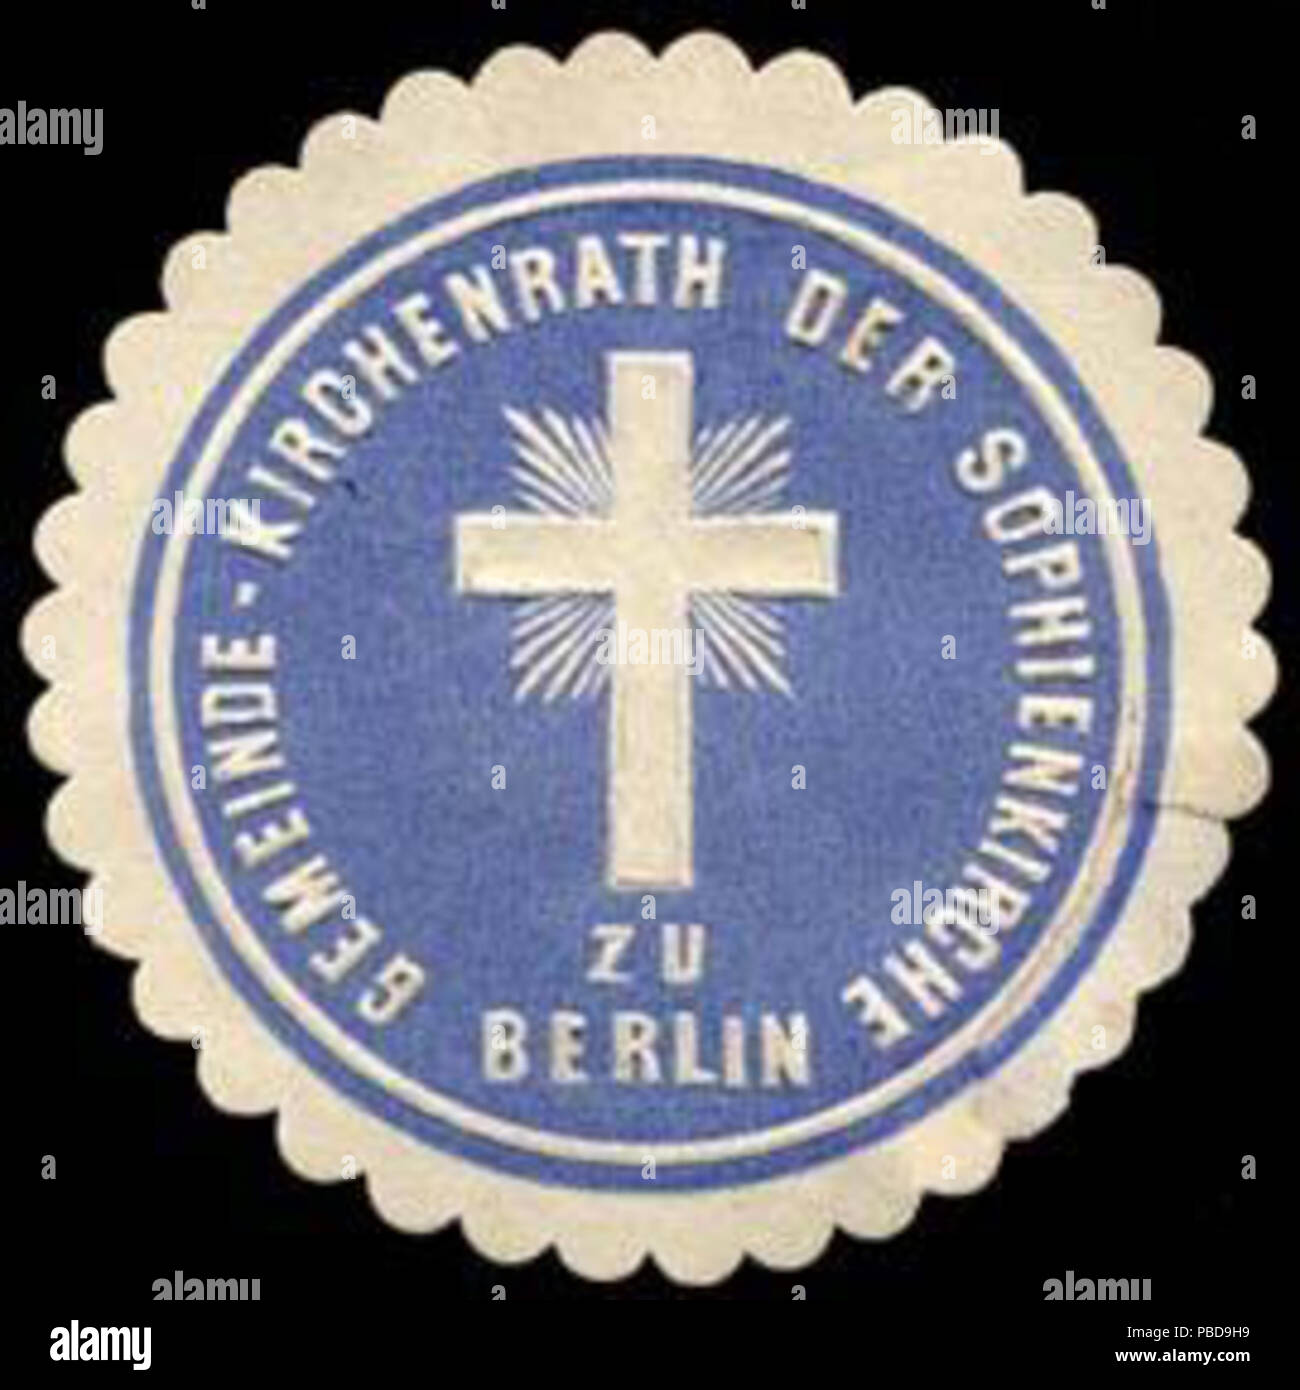 1359 Siegelmarke Gemeinde - Kirchenrath der Sophienkirche zu Berlin W0235787 Stock Photo